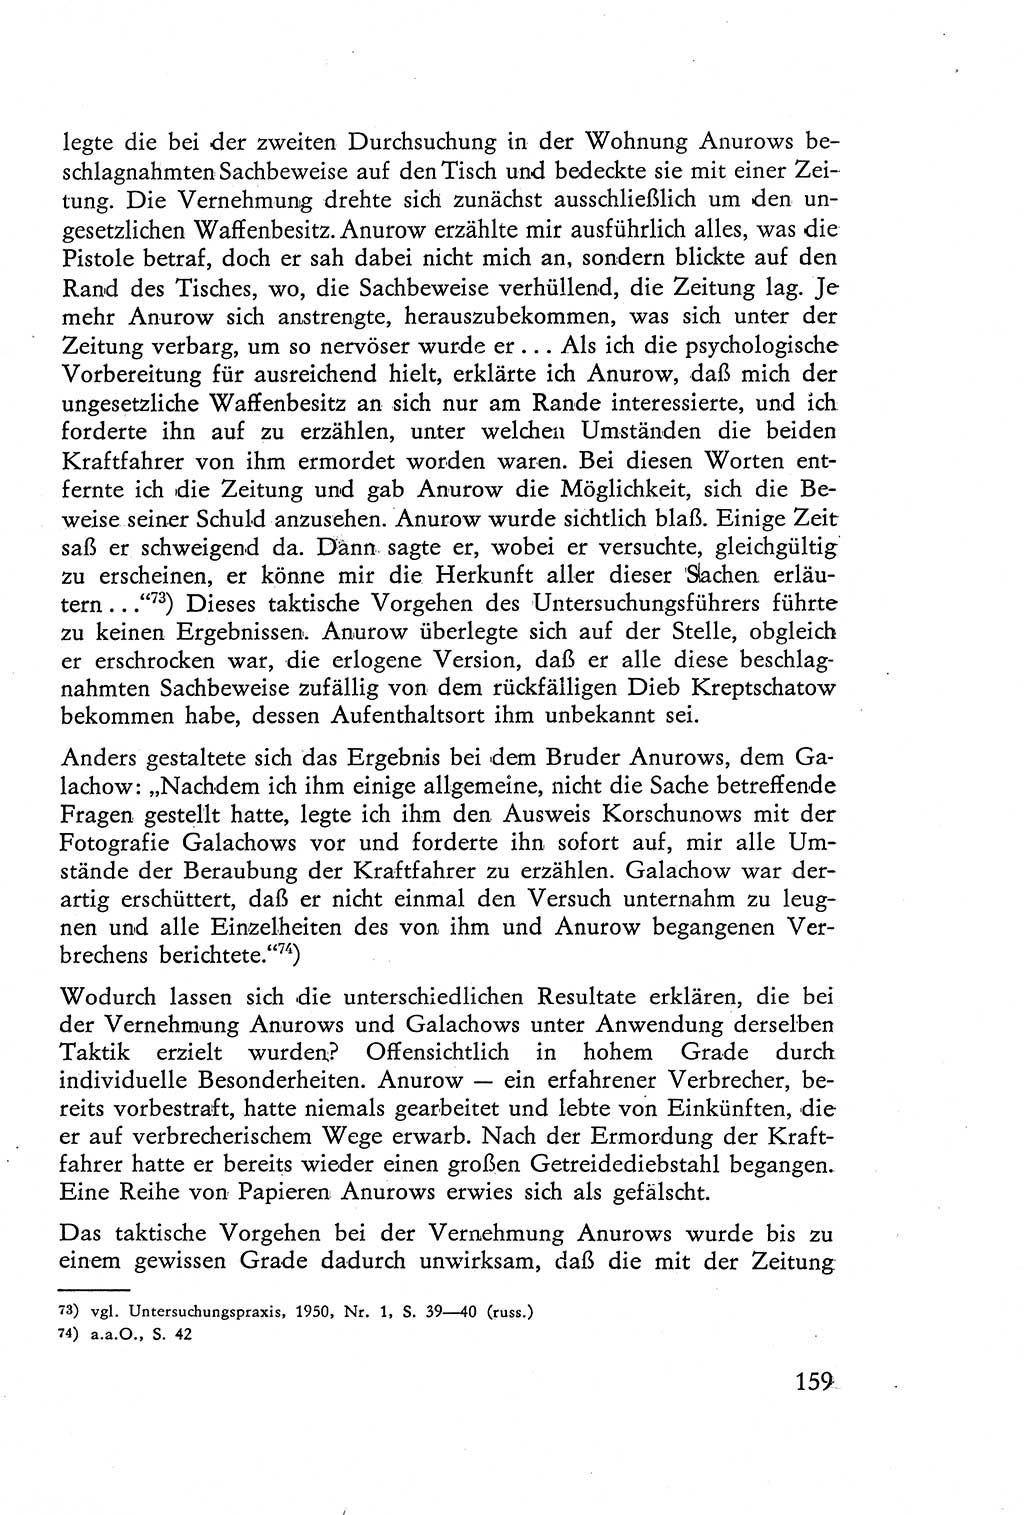 Die Vernehmung [Deutsche Demokratische Republik (DDR)] 1960, Seite 159 (Vern. DDR 1960, S. 159)